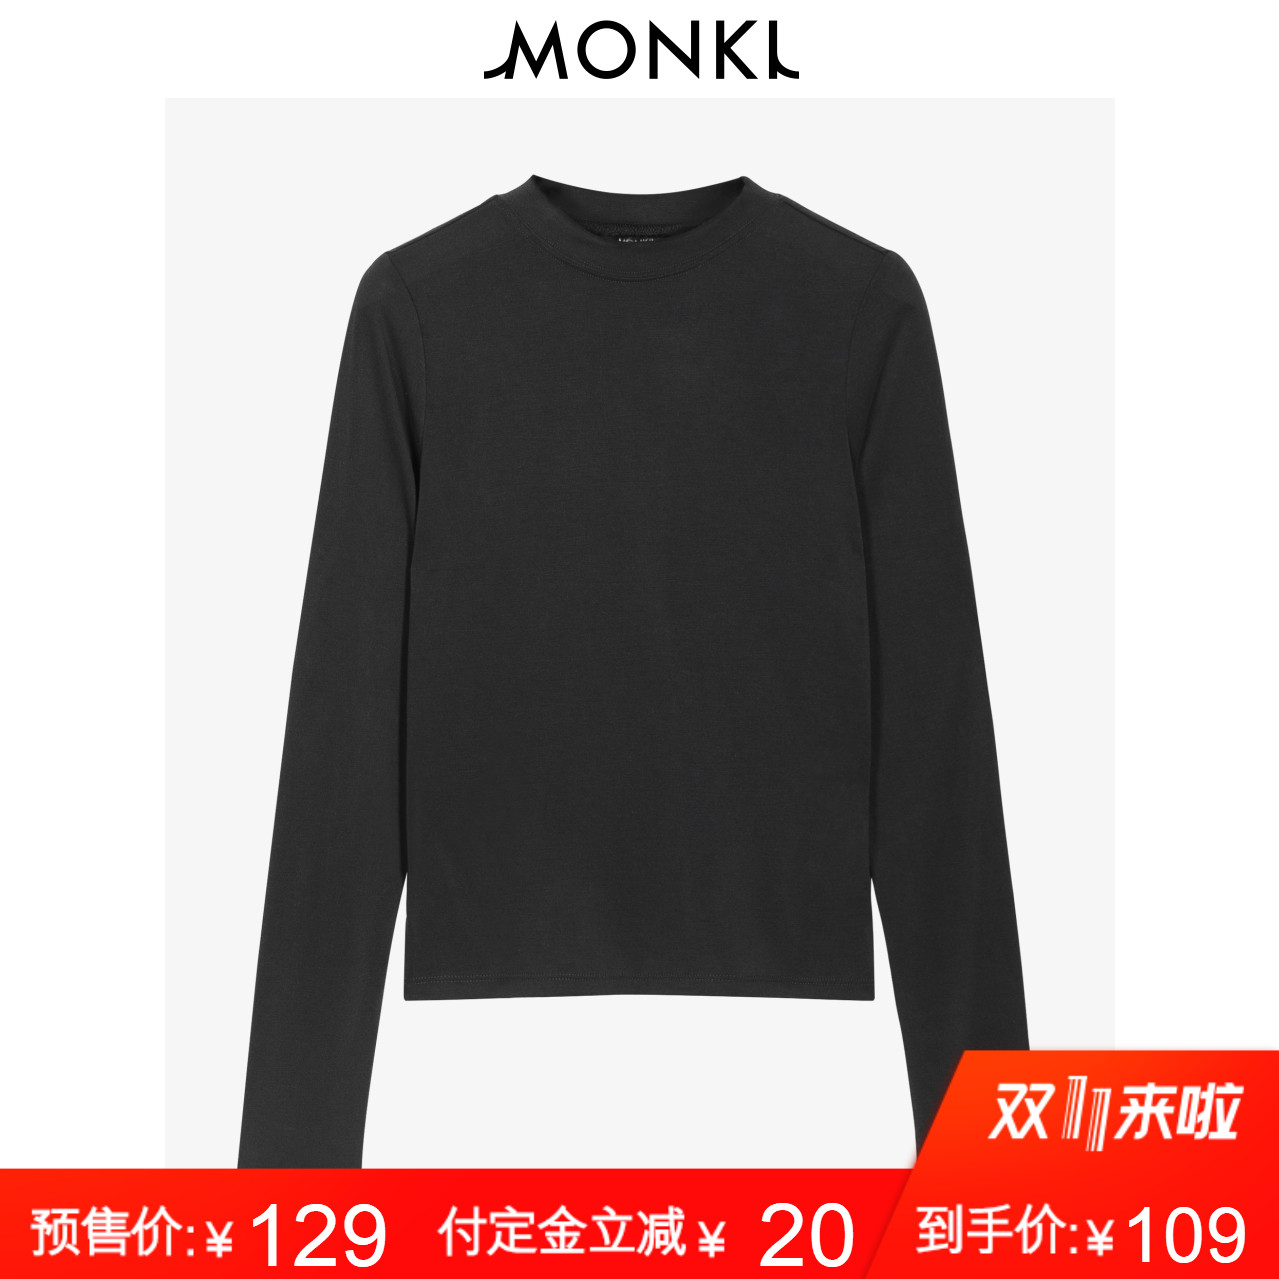 【预售】MONKI2018早秋新款简约时尚弹力修身黑色长袖圆领T恤女